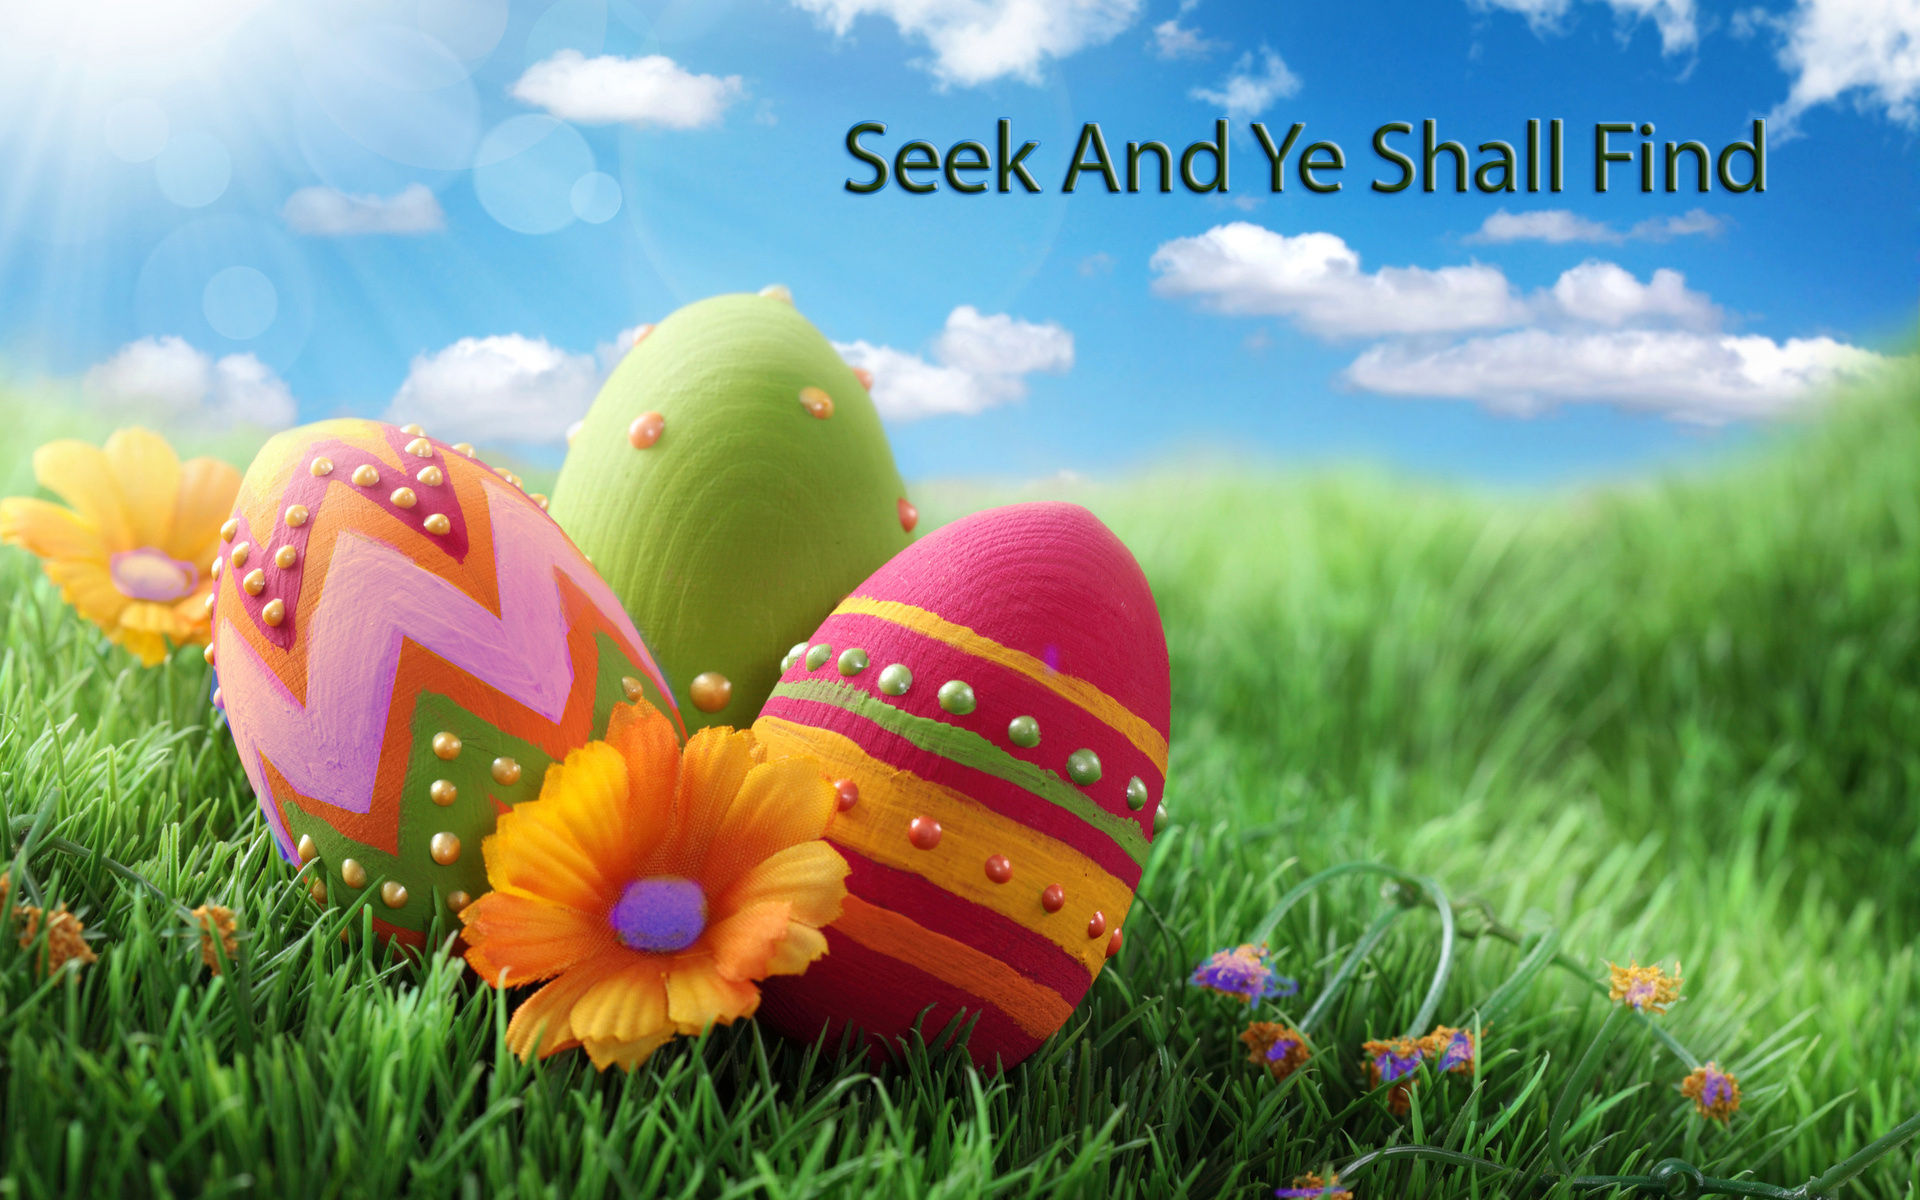 Preschool & Children's Easter Egg Hunt. Home > News > Preschool & Children's Easter Egg Hunt